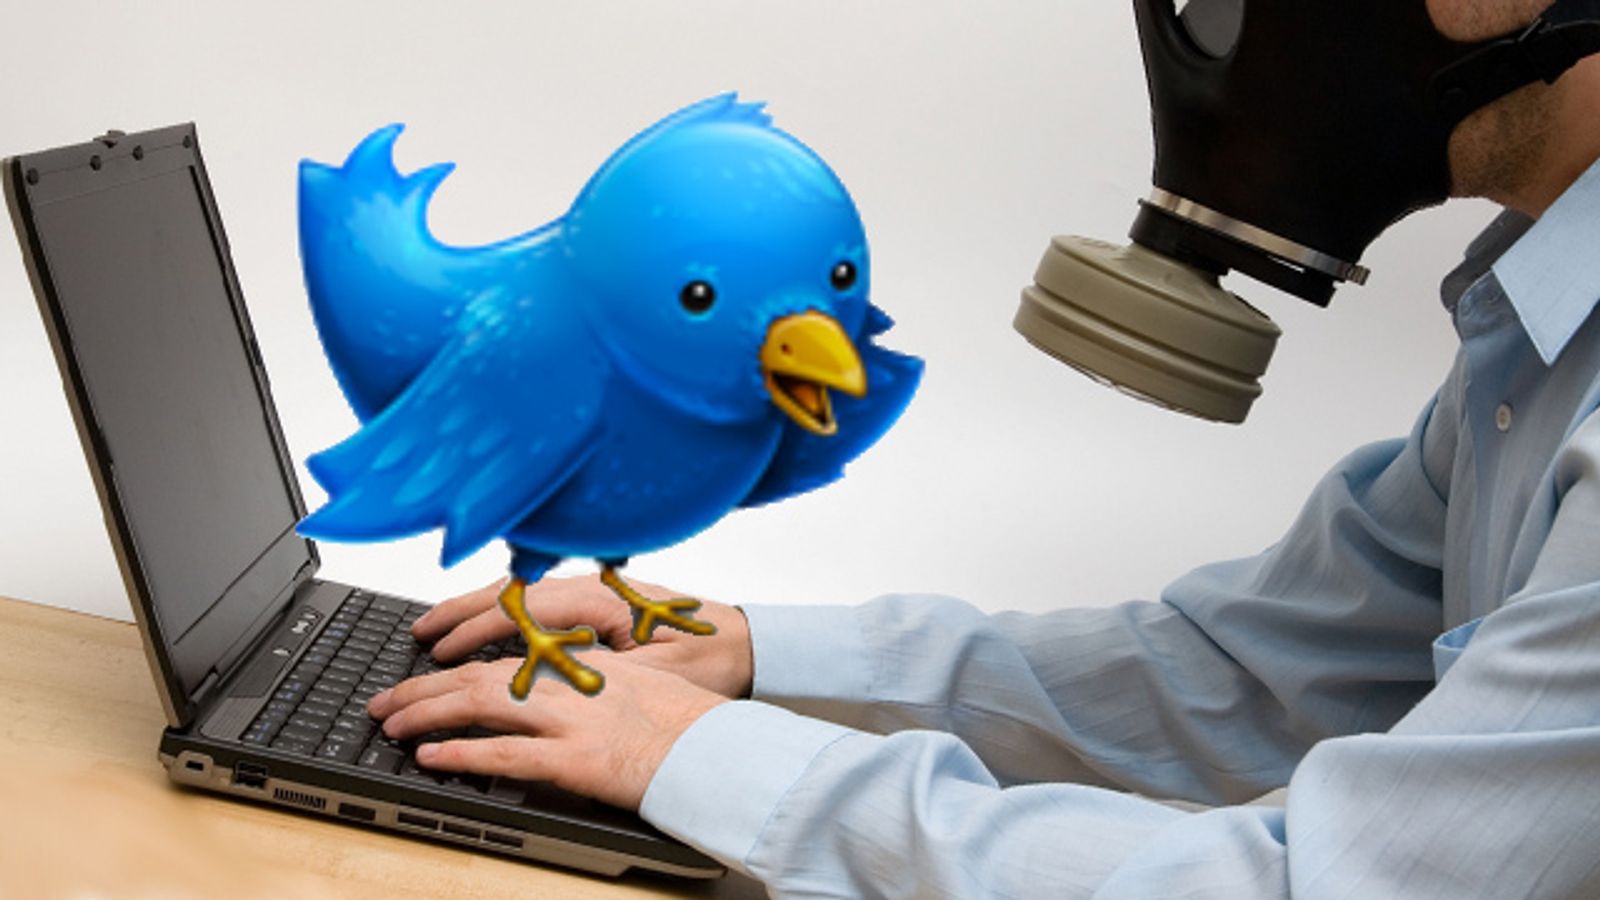 Twitter Begins Filtering for Malware Links